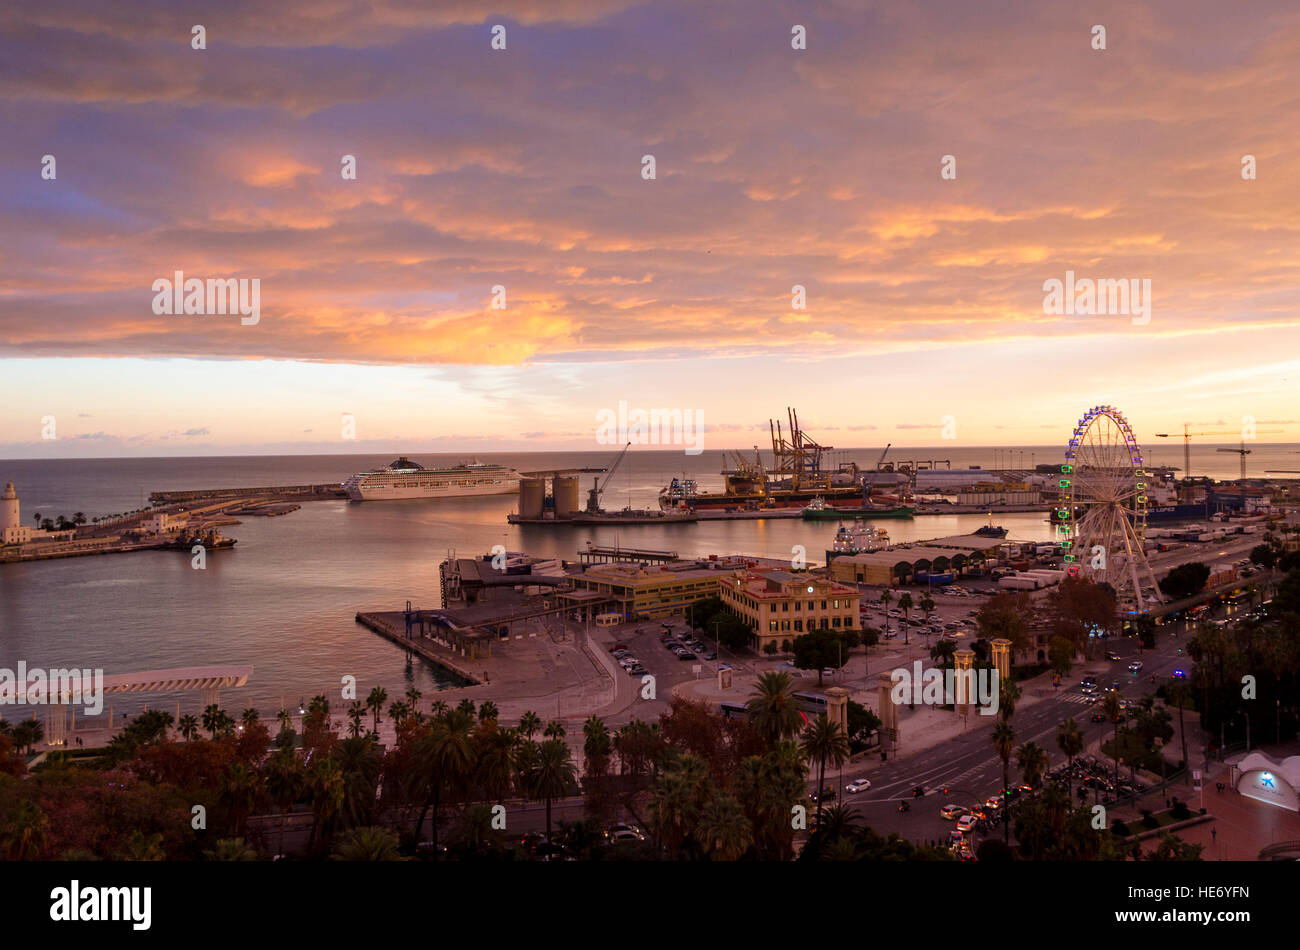 Luftaufnahme des Plaza Marina mit Ferris wheel, Hafen von Malaga, Sonnenuntergang, Andalusien, Spanien. Stockfoto